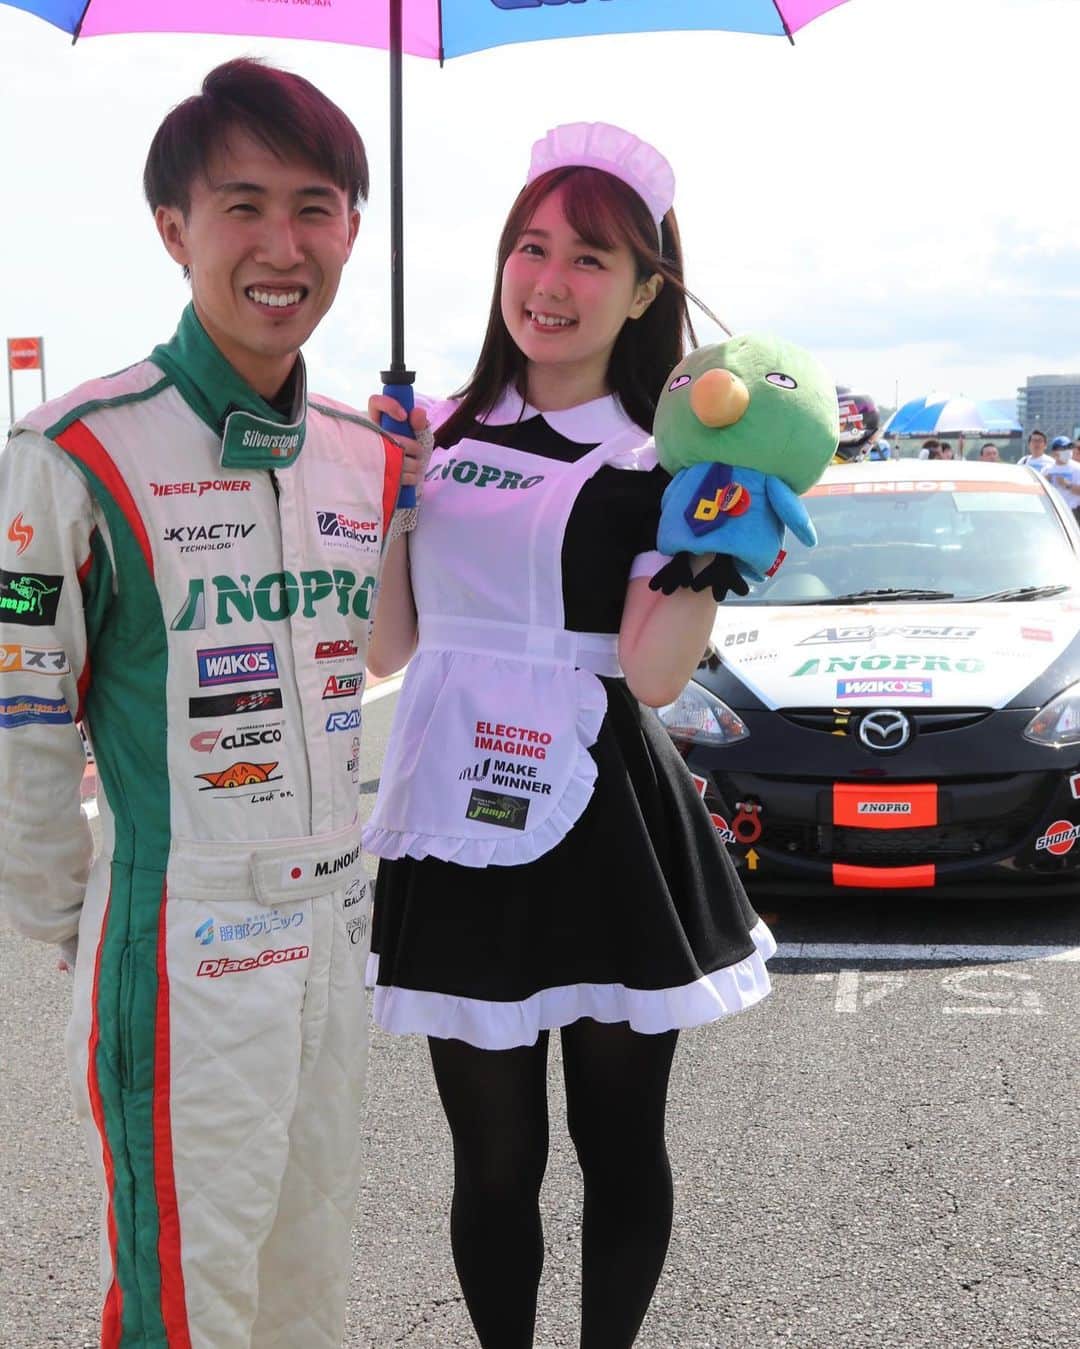 鈴乃八雲のインスタグラム：「ついに！明日からスーパー耐久最終戦です！ 17号車は現在シリーズランキング２位、 37号車は９位です。 17号車は今回優勝しましたら、シリーズチャンピオンです🏆 2台ともに表彰台へいけますように #TEAMNOPRO へ熱い応援をよろしくお願い致します🐱📣  #S耐　#メイド　#メイド服 #メイドレースクイーン　#レースクイーン　#racequeen #japan #モータースポーツ #車　#car #モータースポーツ好きな人と繋がりたい #japanese #girl #ノプロ　#ディーゼル　#マツダ　#スーパー耐久 #cosplay #motorsport #motorsports #motorsportsphotography #motorsportphotography #motorsportlife #motorsportsphotography #キャンギャル #キャンペーンガール #gal #waitress #lovely #smile」